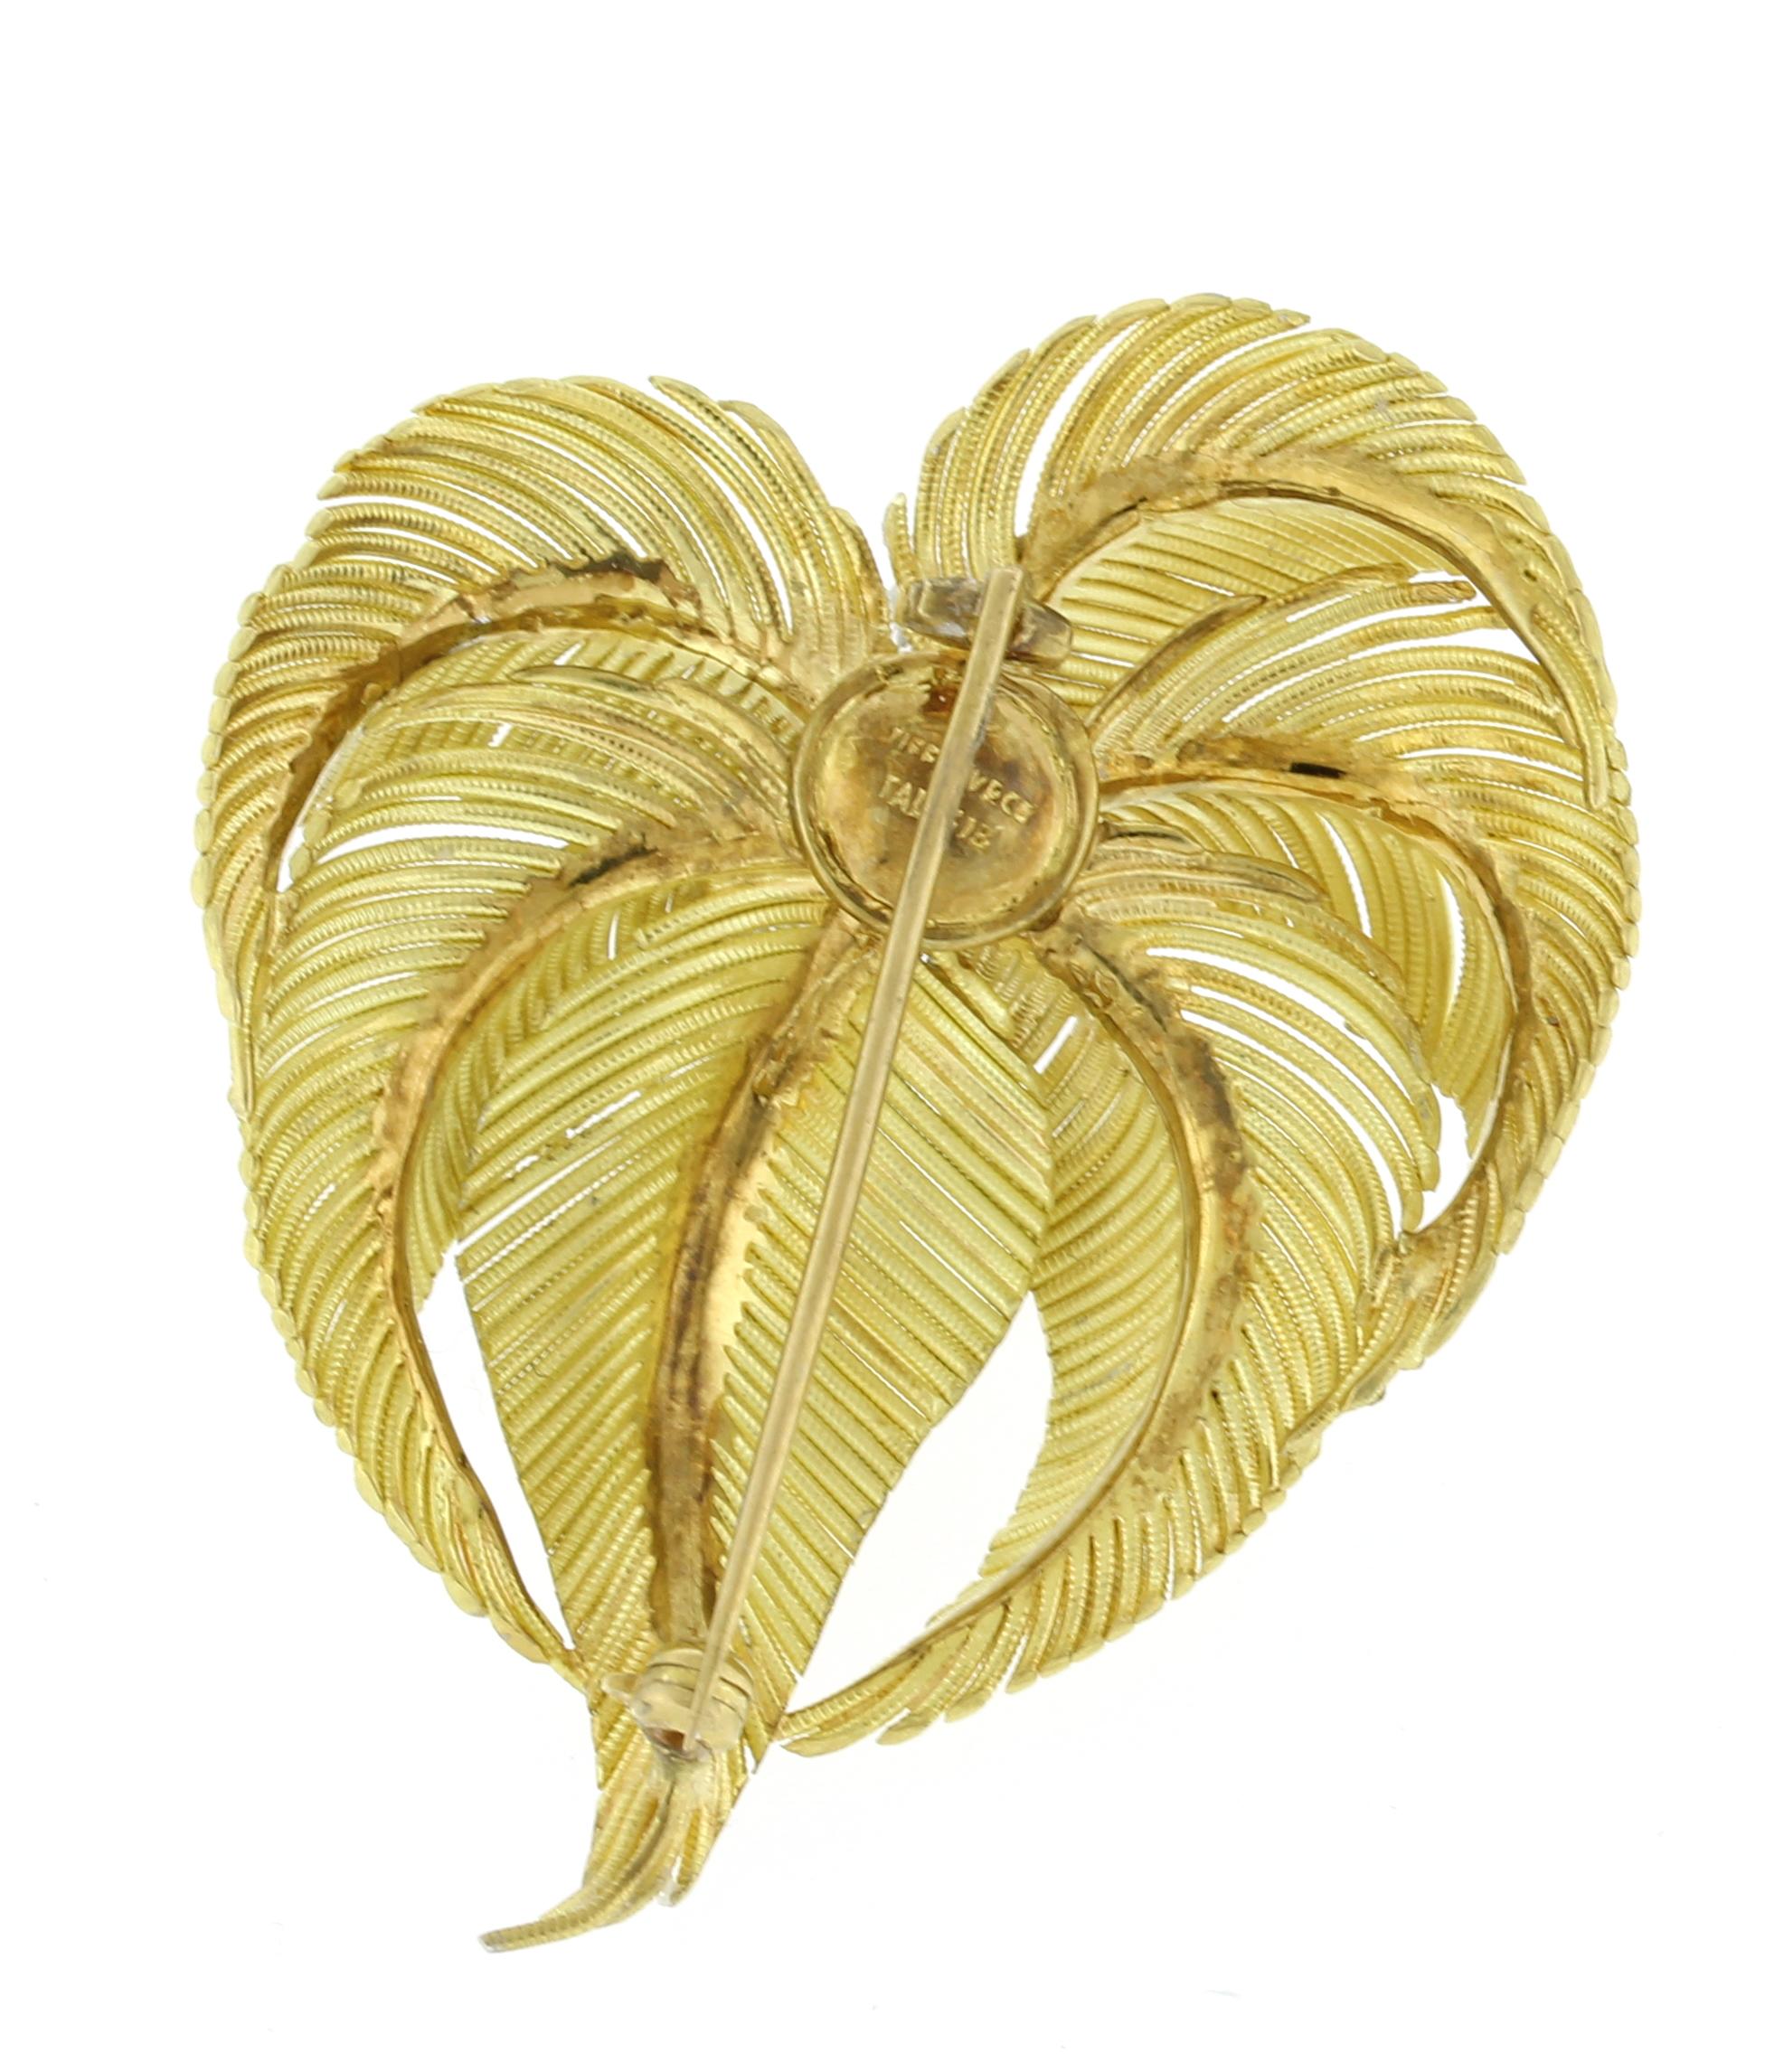 Cette broche en forme de palmier a été fabriquée en Italie par Tiffany & Co.
♦ Designer : Tiffany & Co
Métal : or jaune 18kt et platine
Dimensions : 2 1/4 par 1 3/4 pouces
Pierre précieuse : 9Diamants = Approx .45cts
Emballage : Boîte Tiffany
Condit